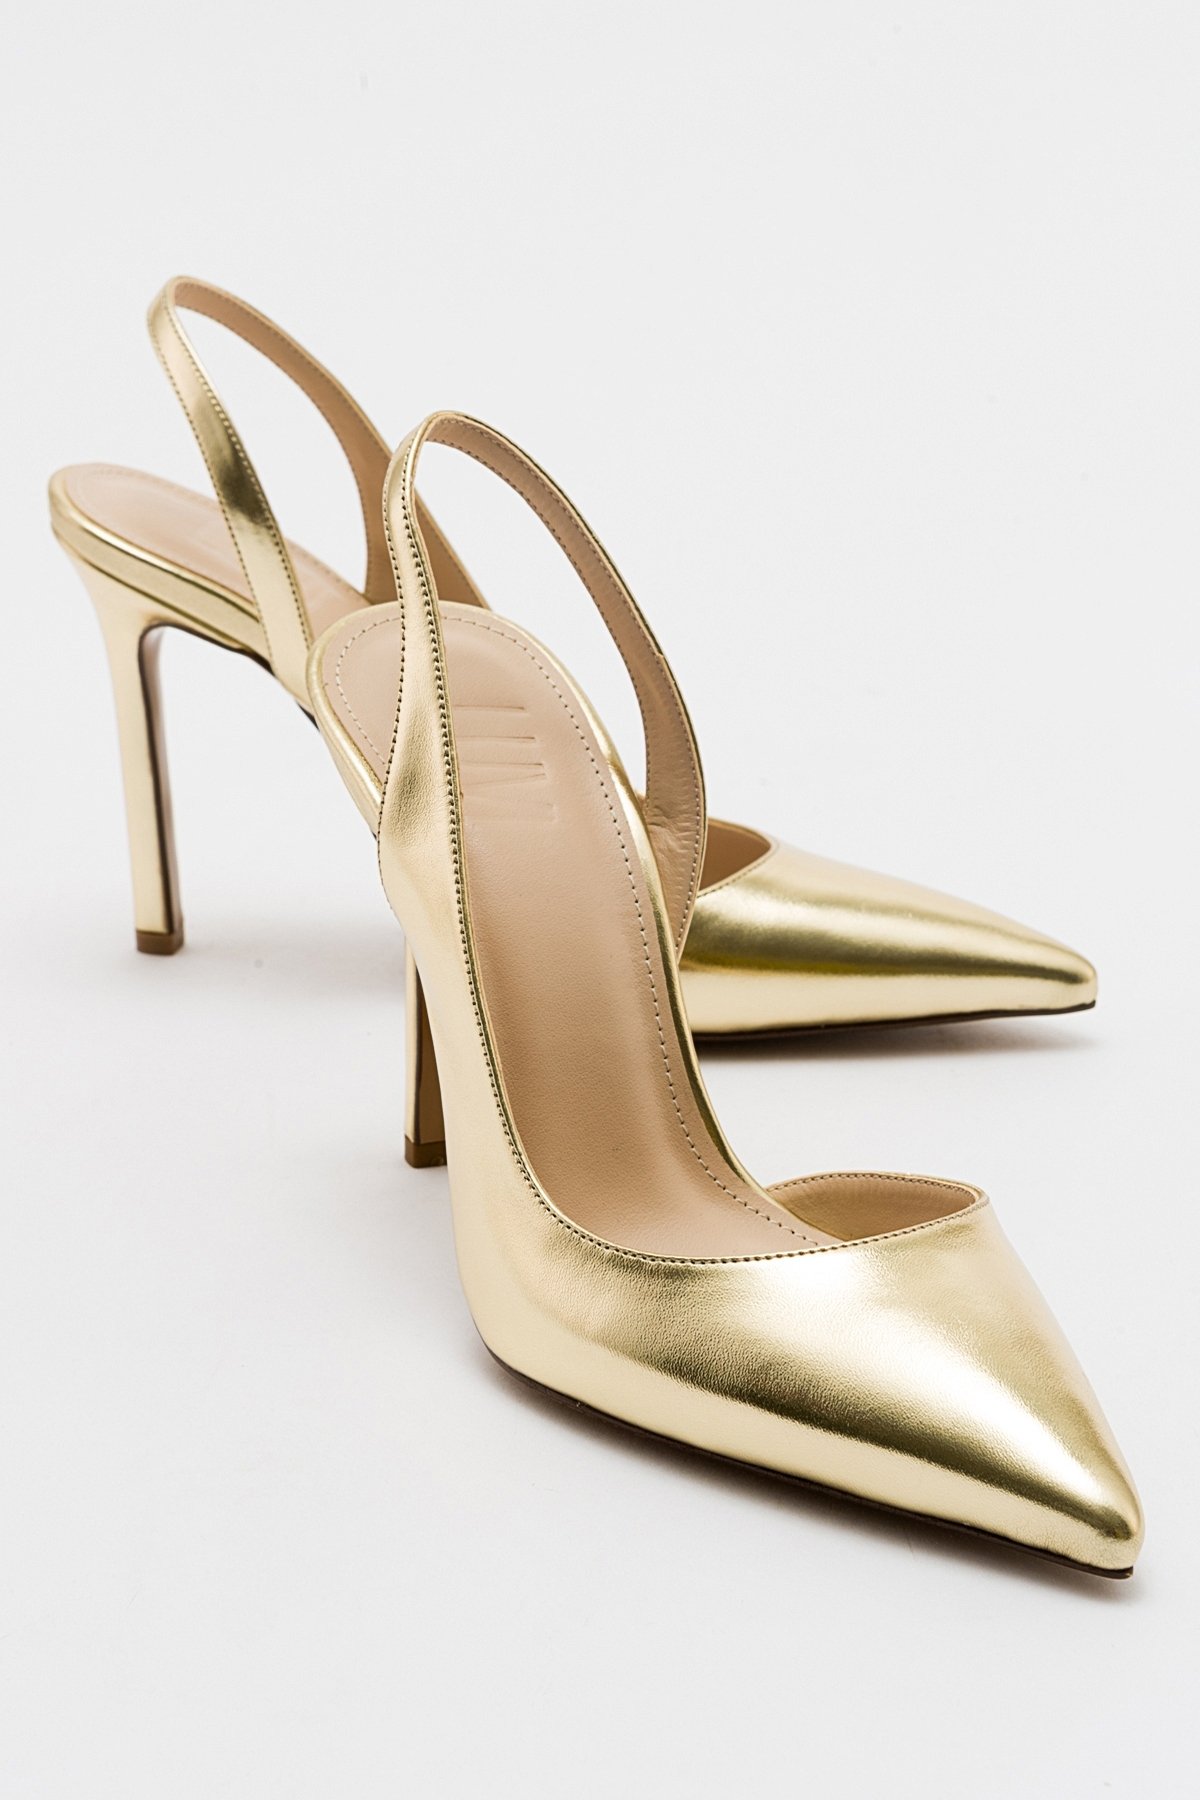 LuviShoes TWINE Women's Metallic Gold Heels